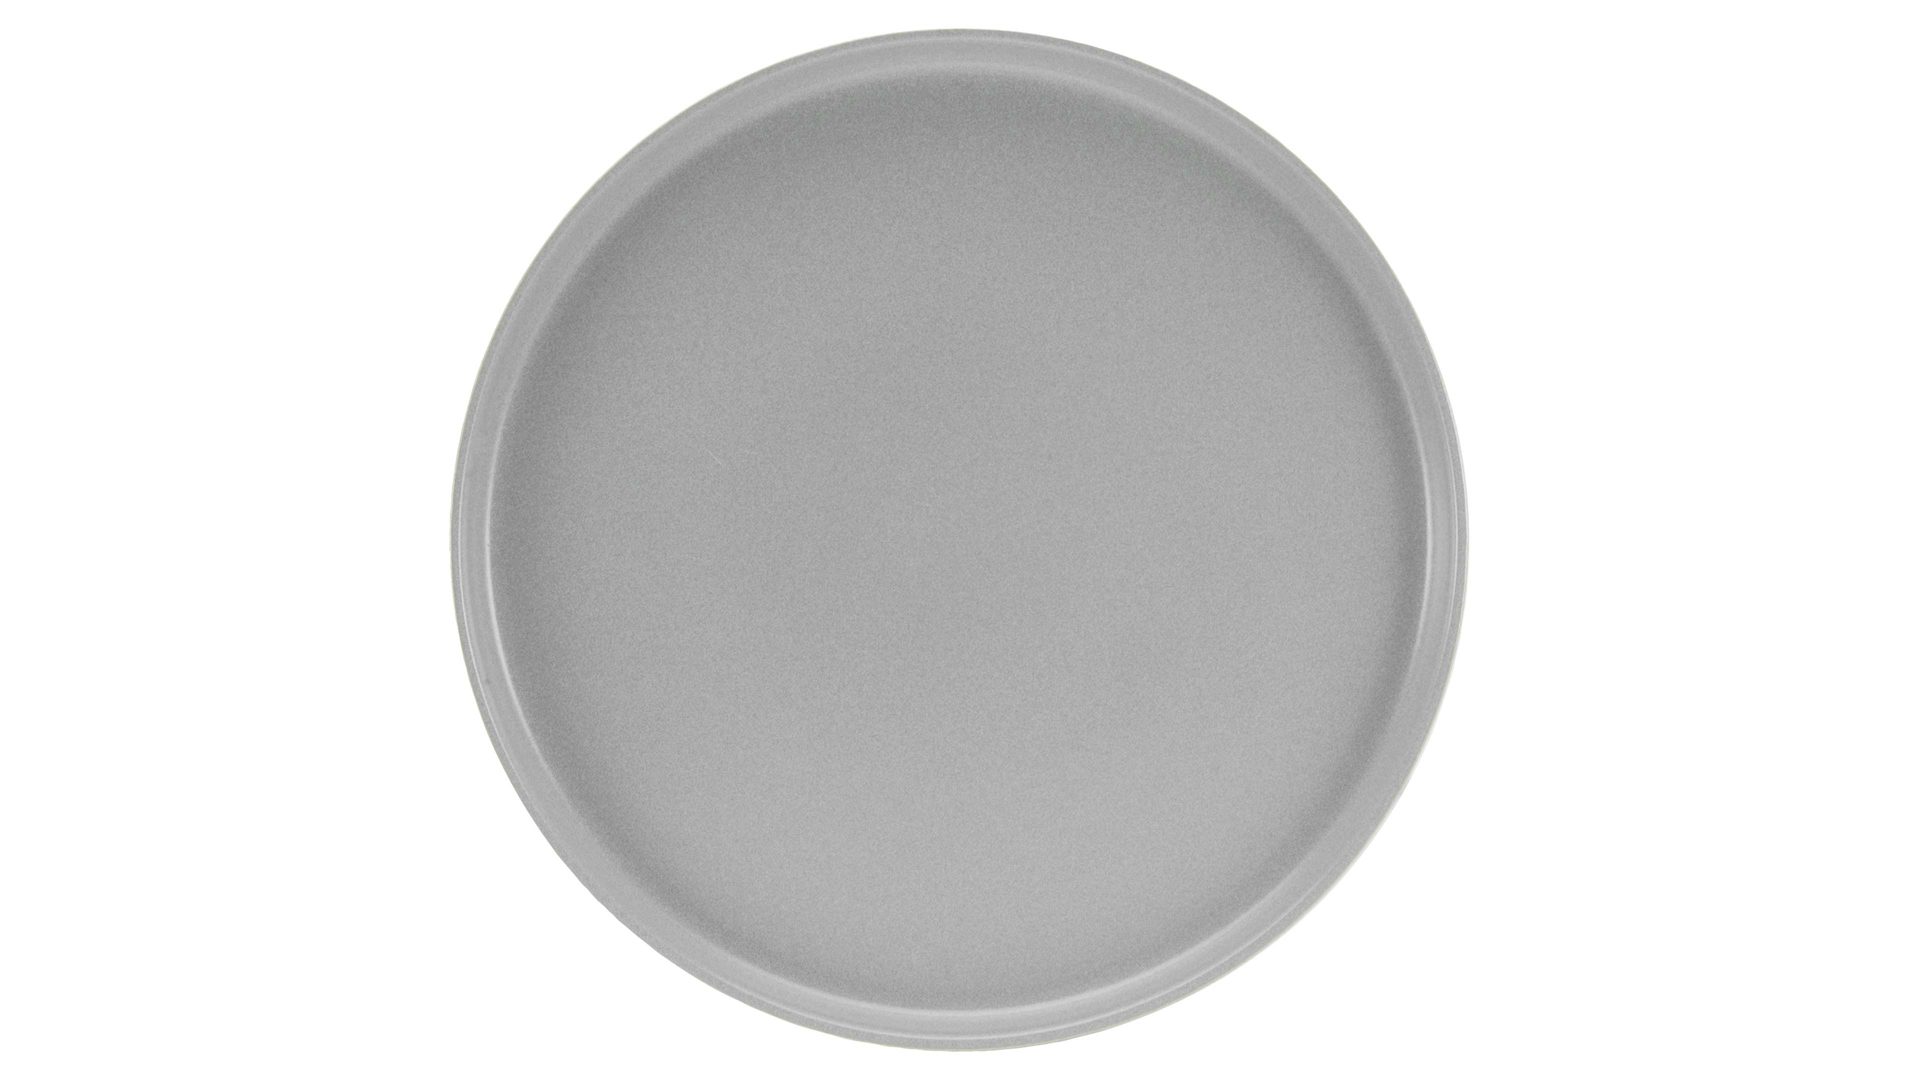 Kuchen- / Frühstücks- / Dessertteller Creatable aus Keramik in Grau CREATABLE Uno – Dessertteller graues Steinzeug – Durchmesser ca. 21 cm